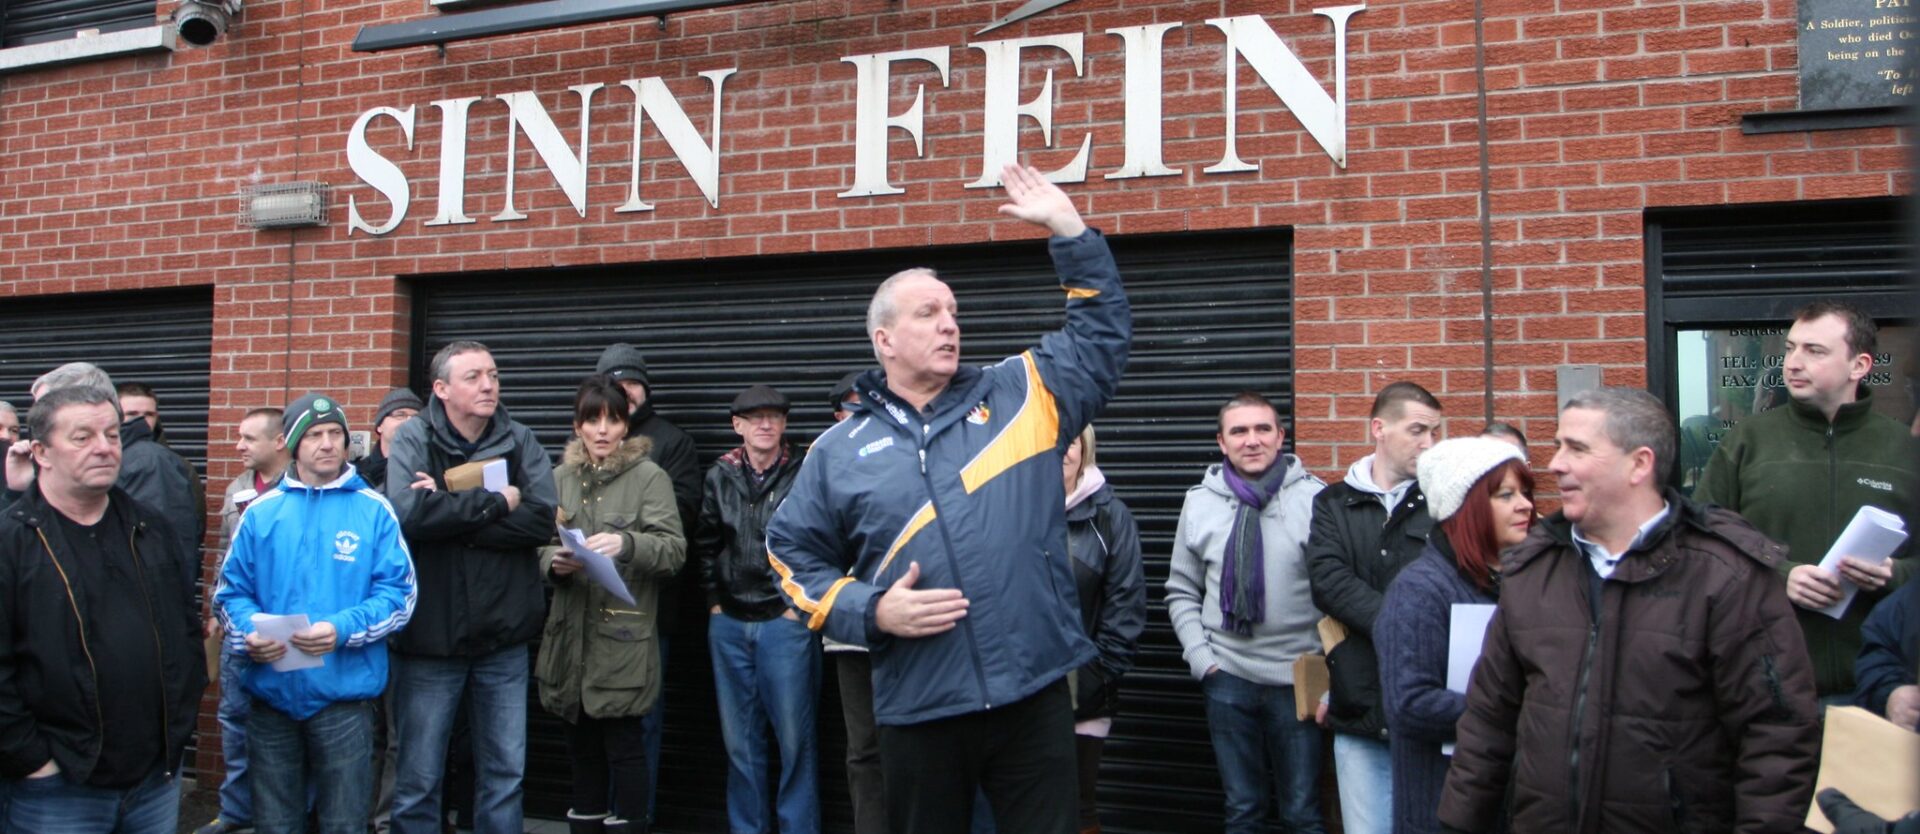 En Irlande du Nord, le Sinn Fein, partisan d'une Irlande unie, a le vent en poupe | © Sinn Fein/Flickr/CC BY 2.0